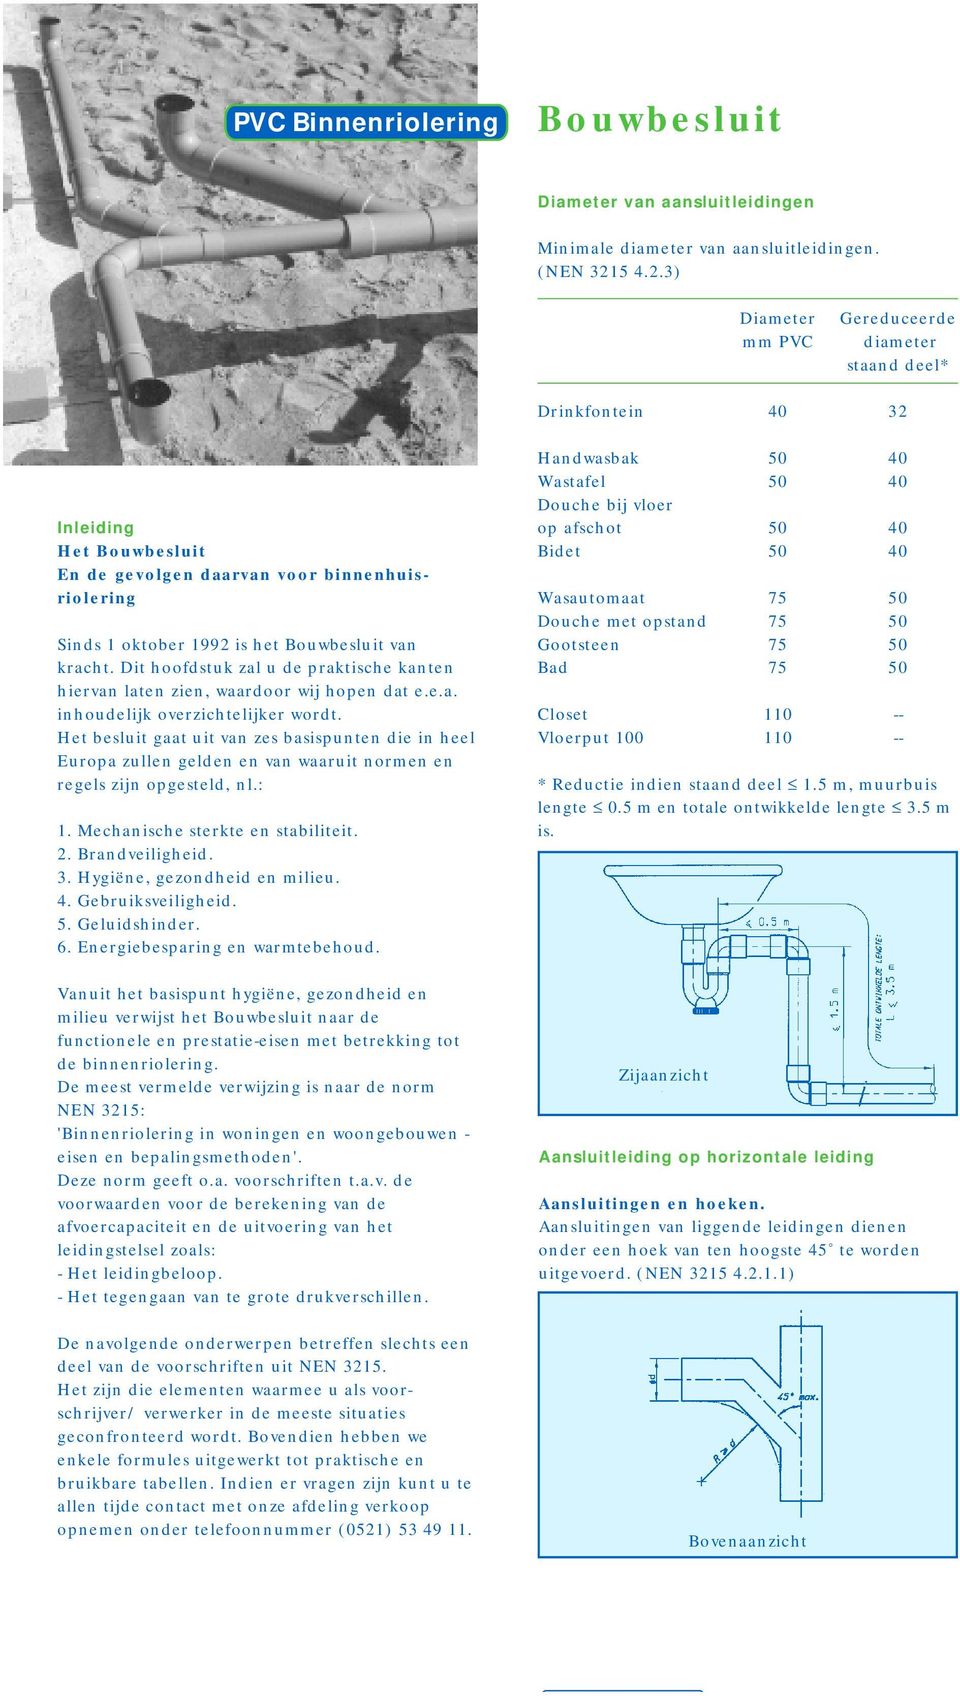 3) Diameter mm PVC Gereduceerde diameter staand deel* Drinkfontein 40 32 Inleiding Het Bouwbesluit En de gevolgen daarvan voor binnenhuisriolering Sinds 1 oktober 1992 is het Bouwbesluit van kracht.